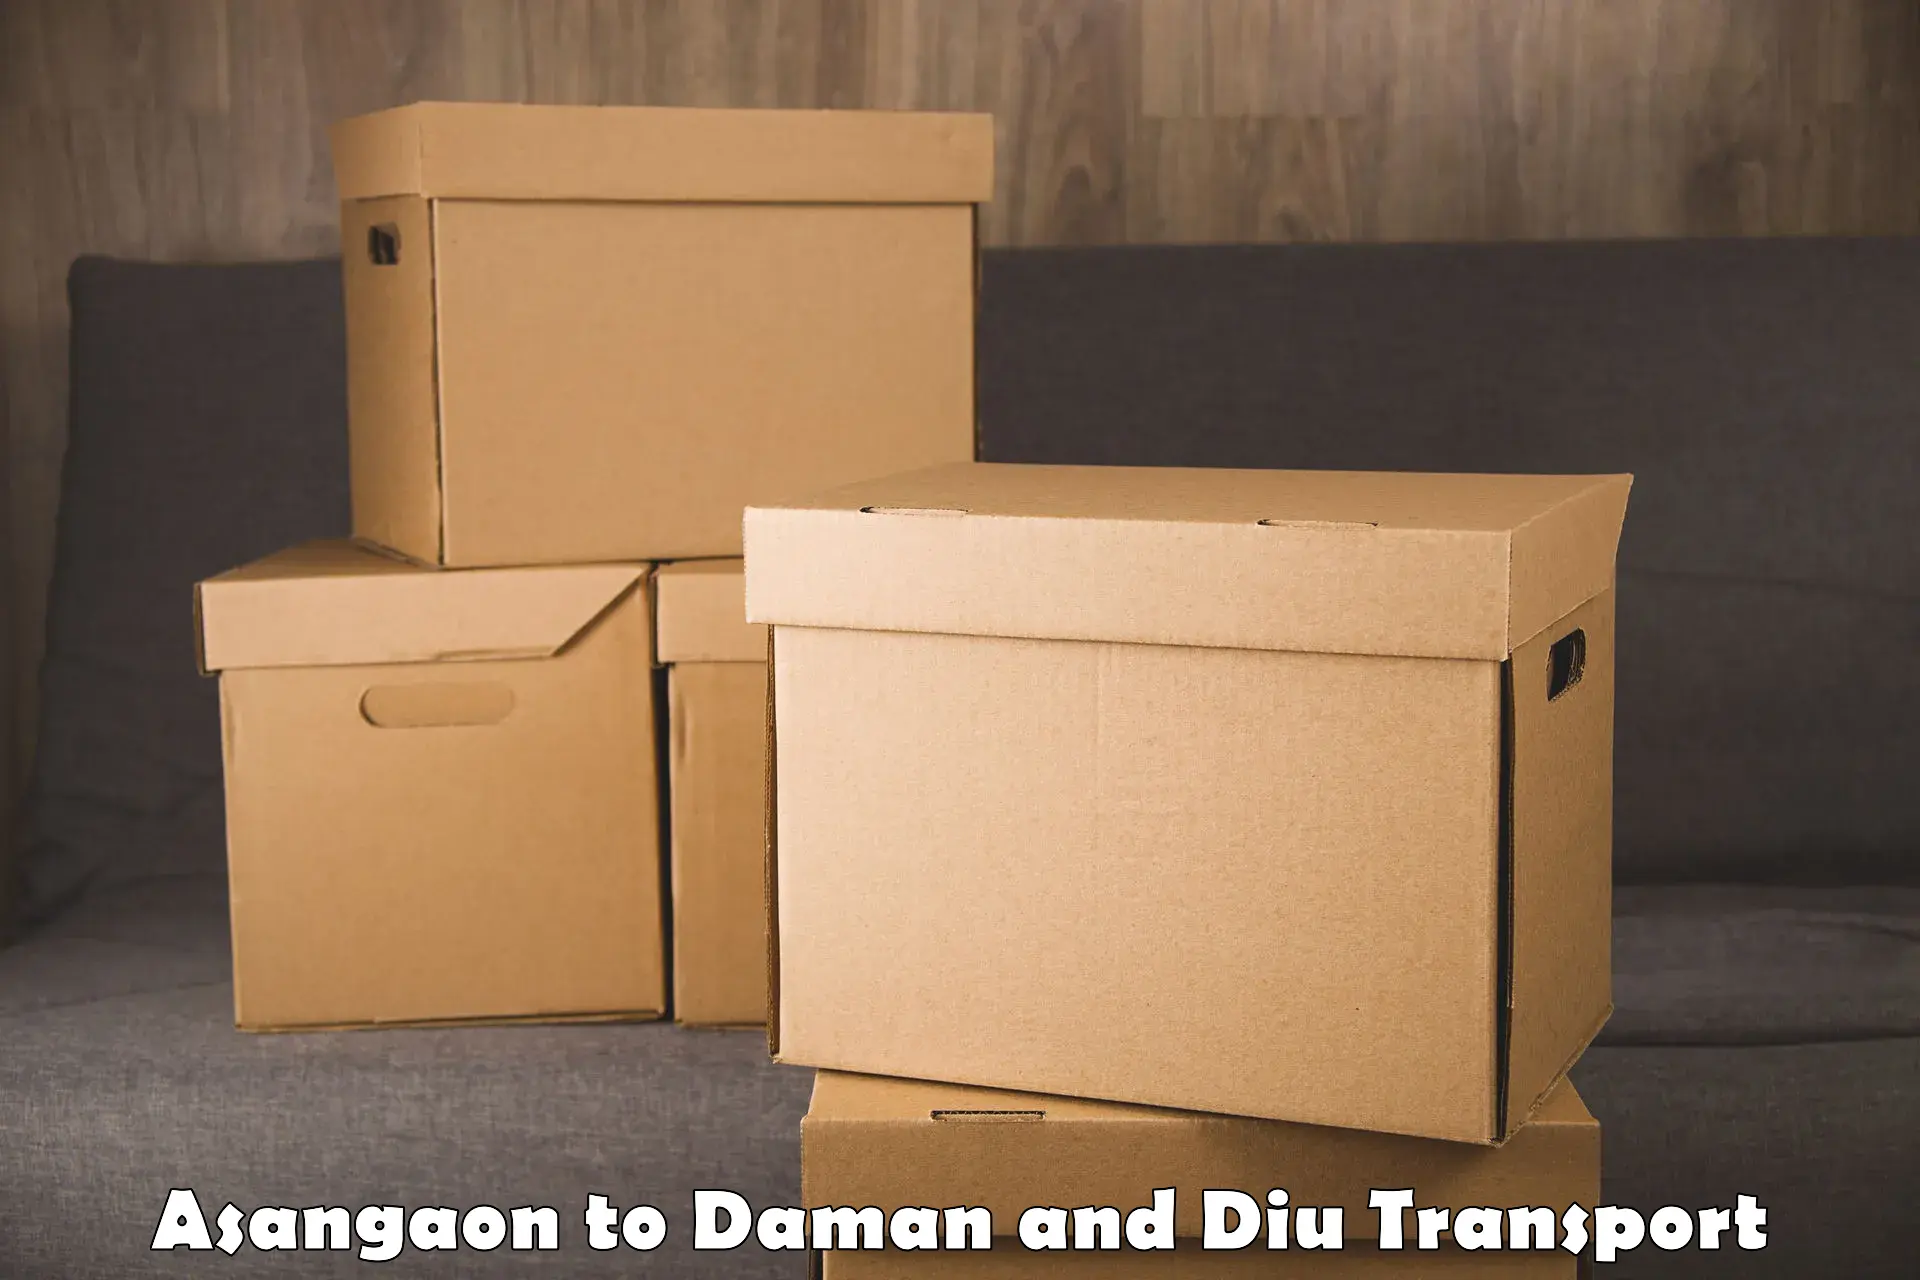 Container transport service Asangaon to Diu